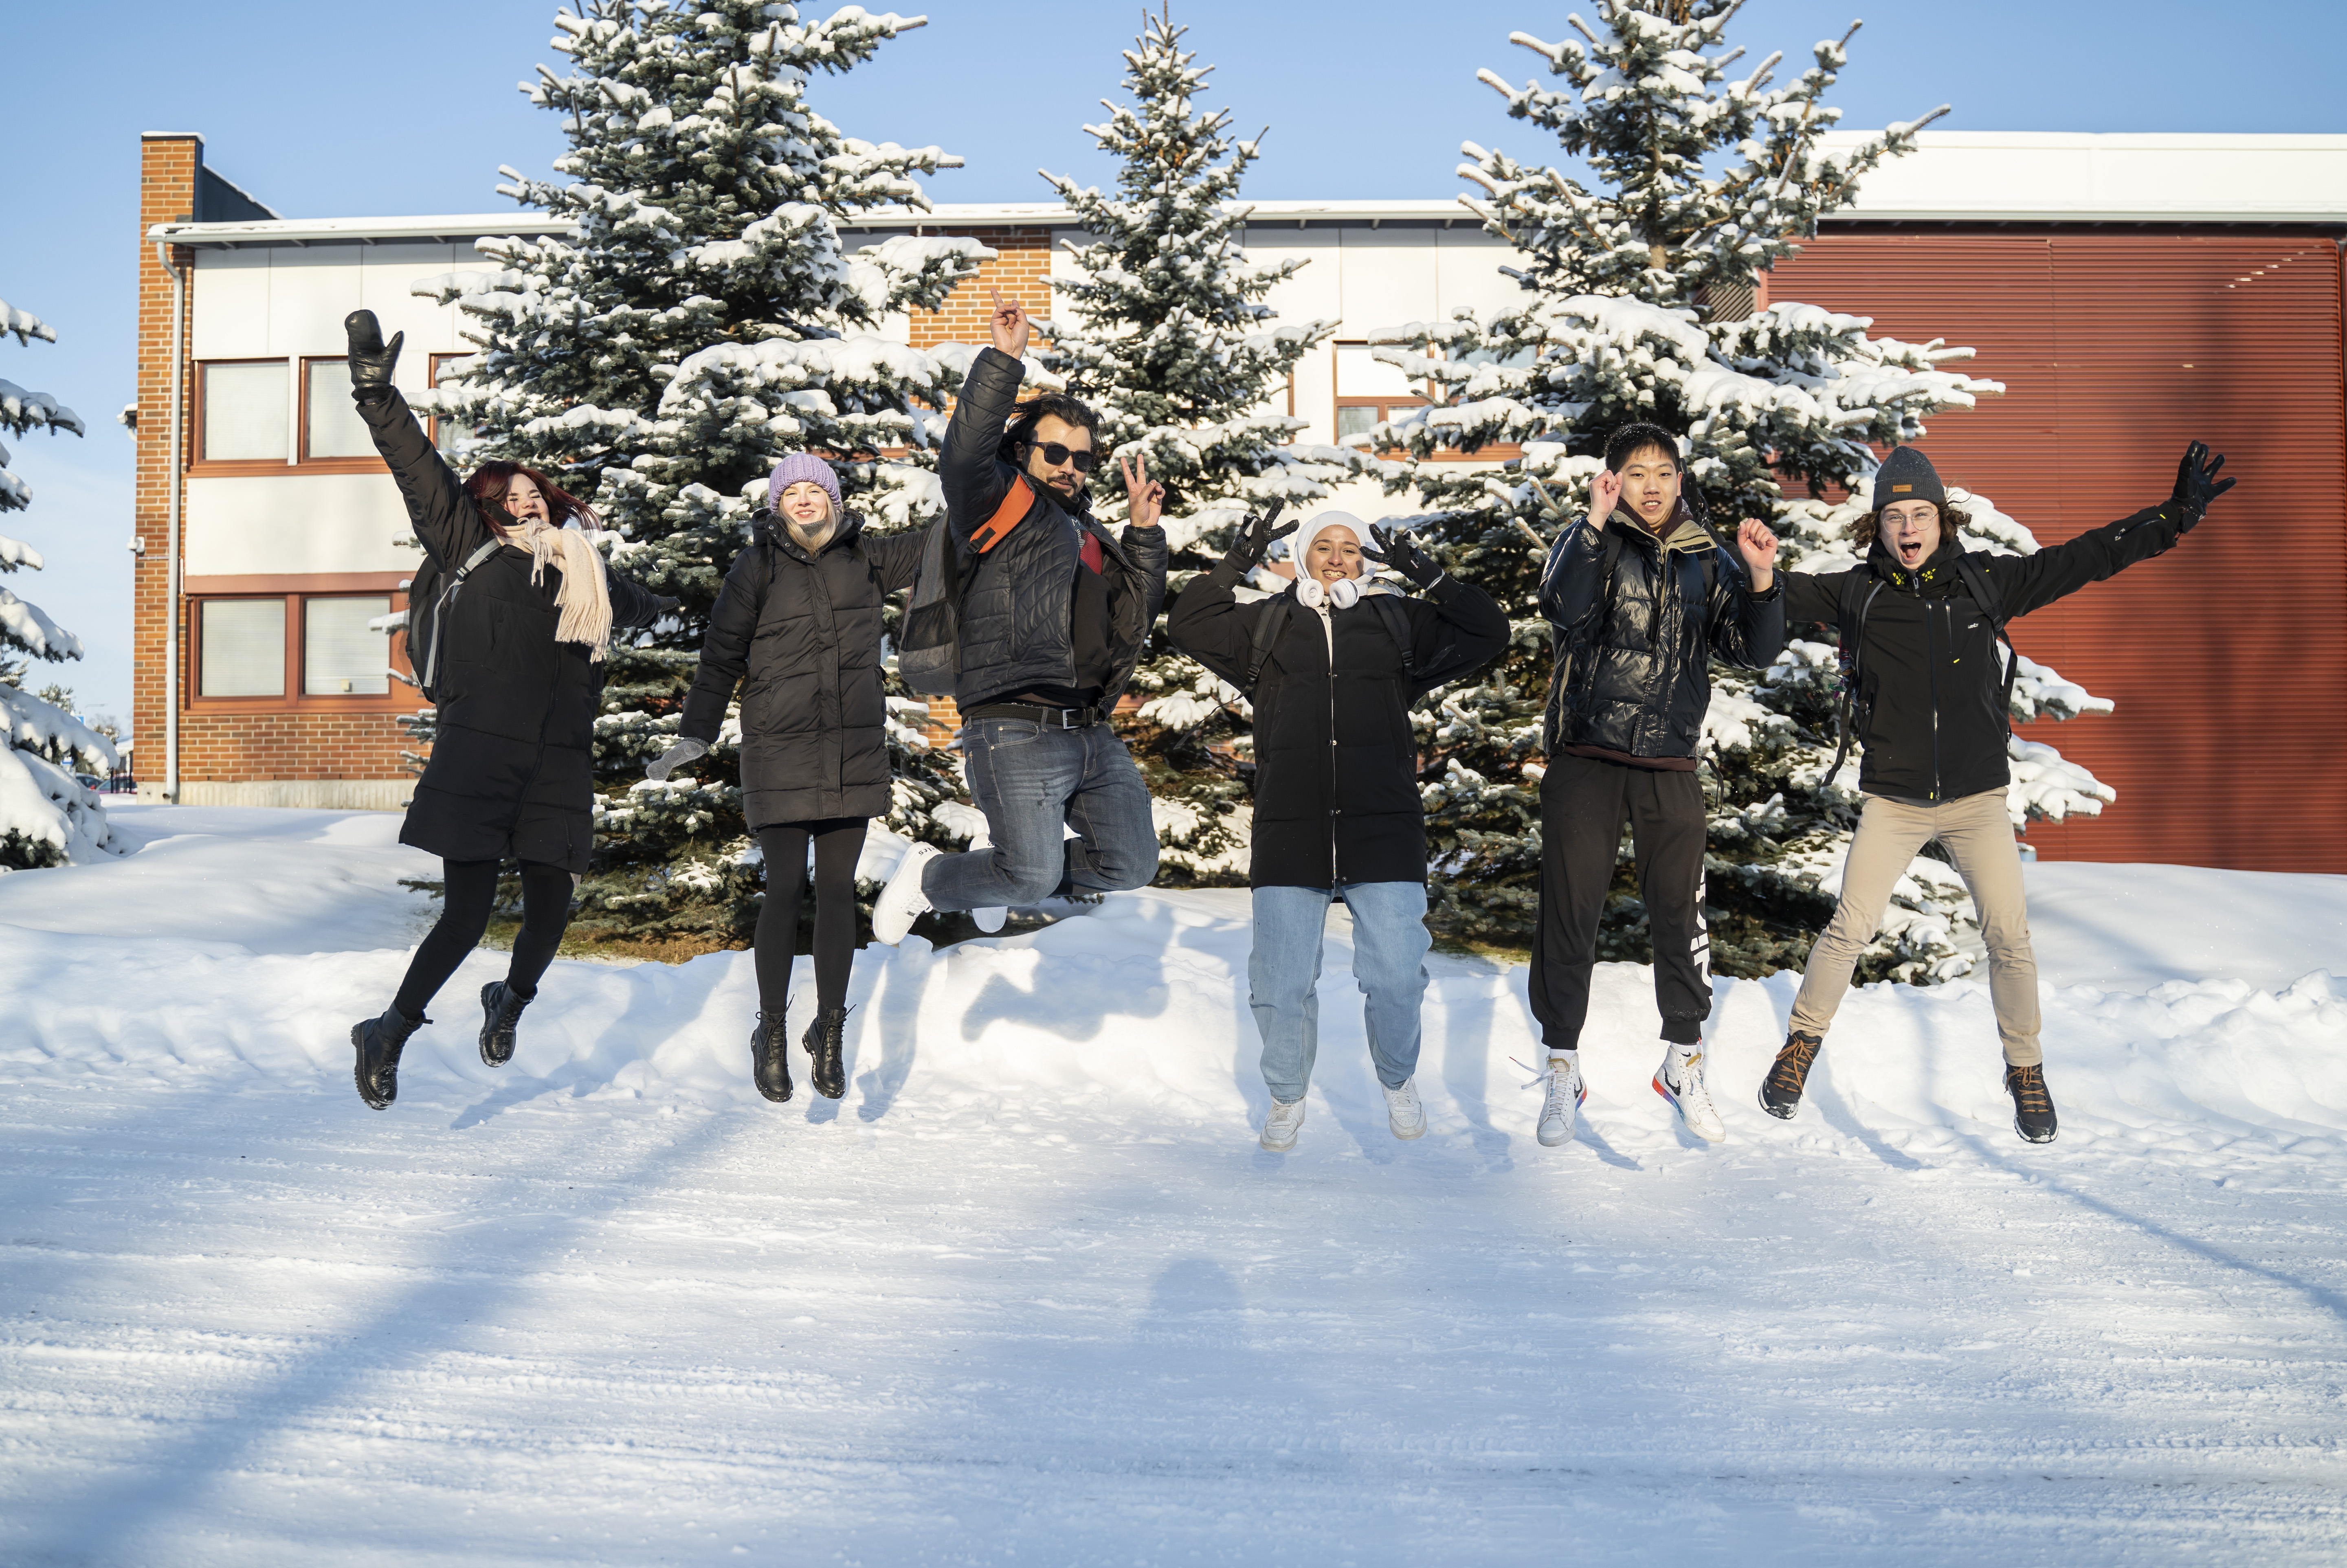 Ryhmä opiskelijoita kuvattuna Talonpojankadun kampuksen pihalla talviaikaan.